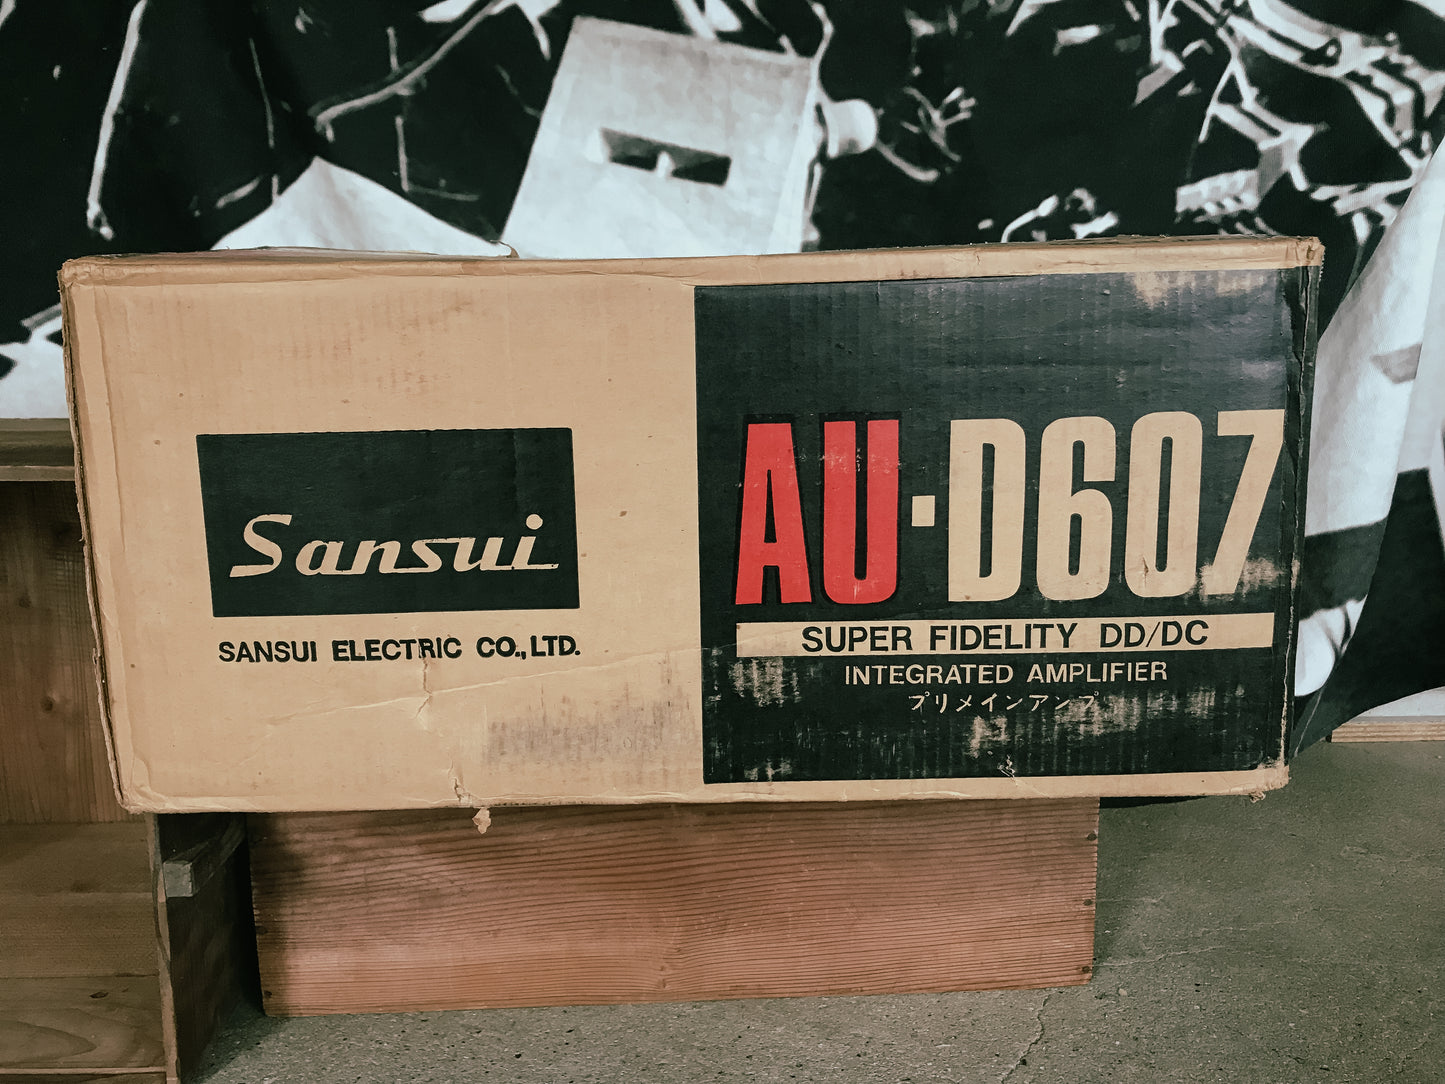 SANSUI AU-D607 Stereo Amplifier